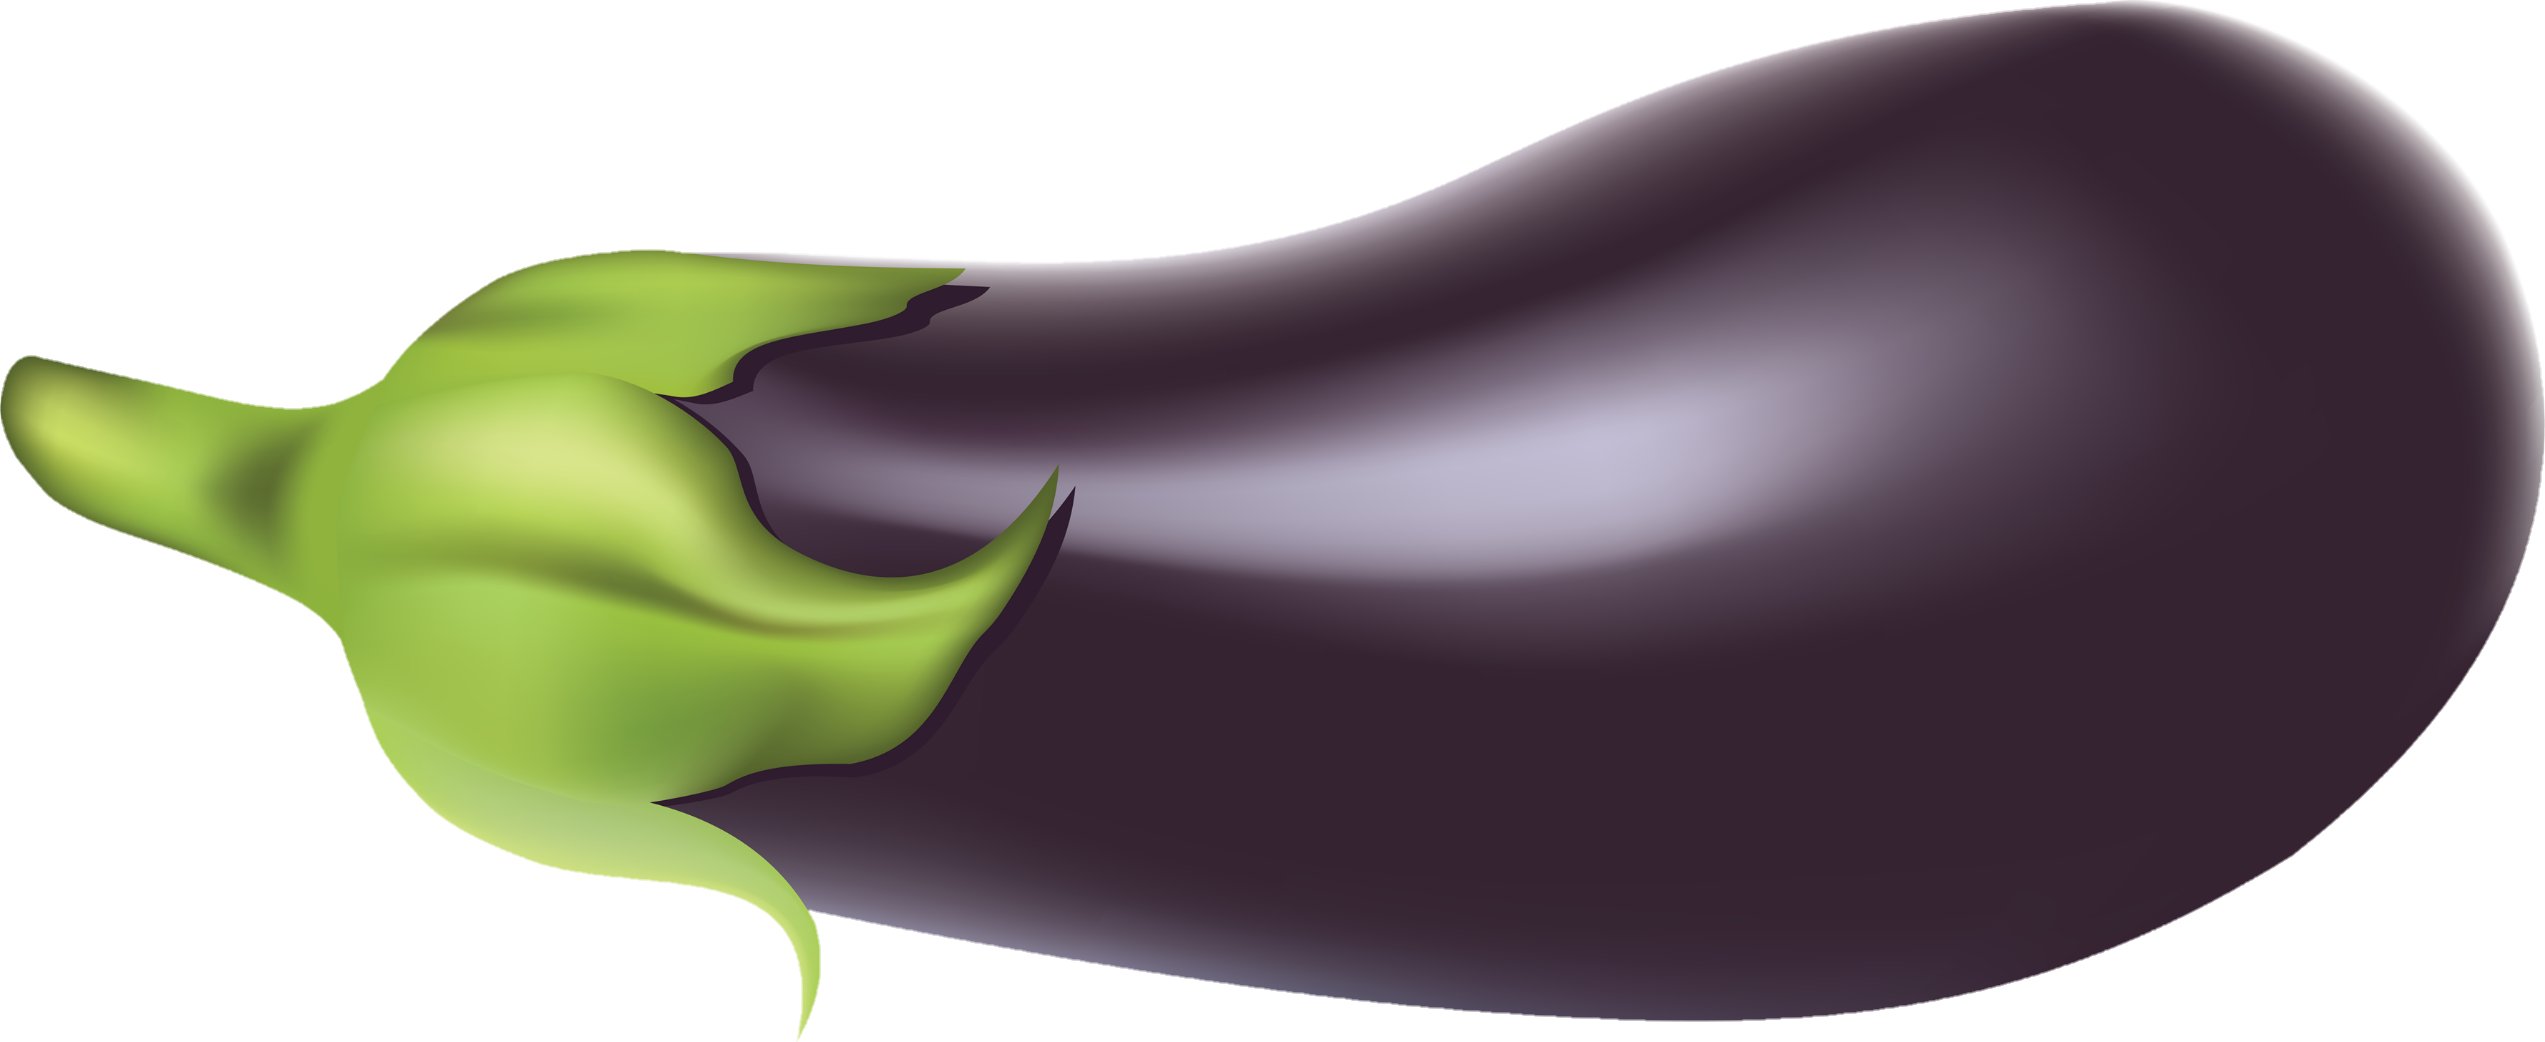 Eggplant-26